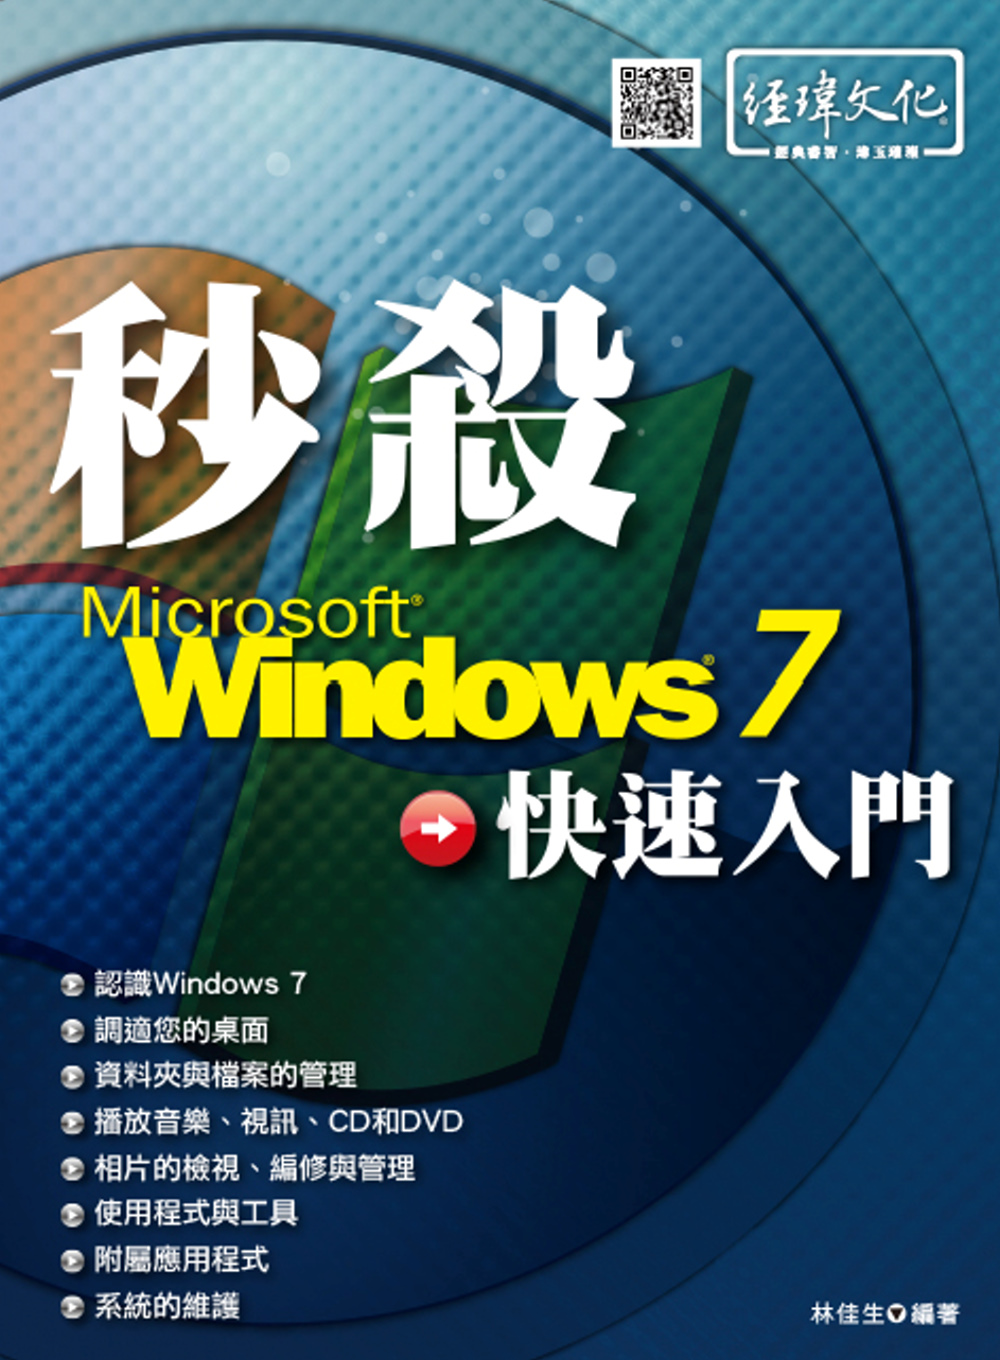 秒殺 Windows 7 快速入門